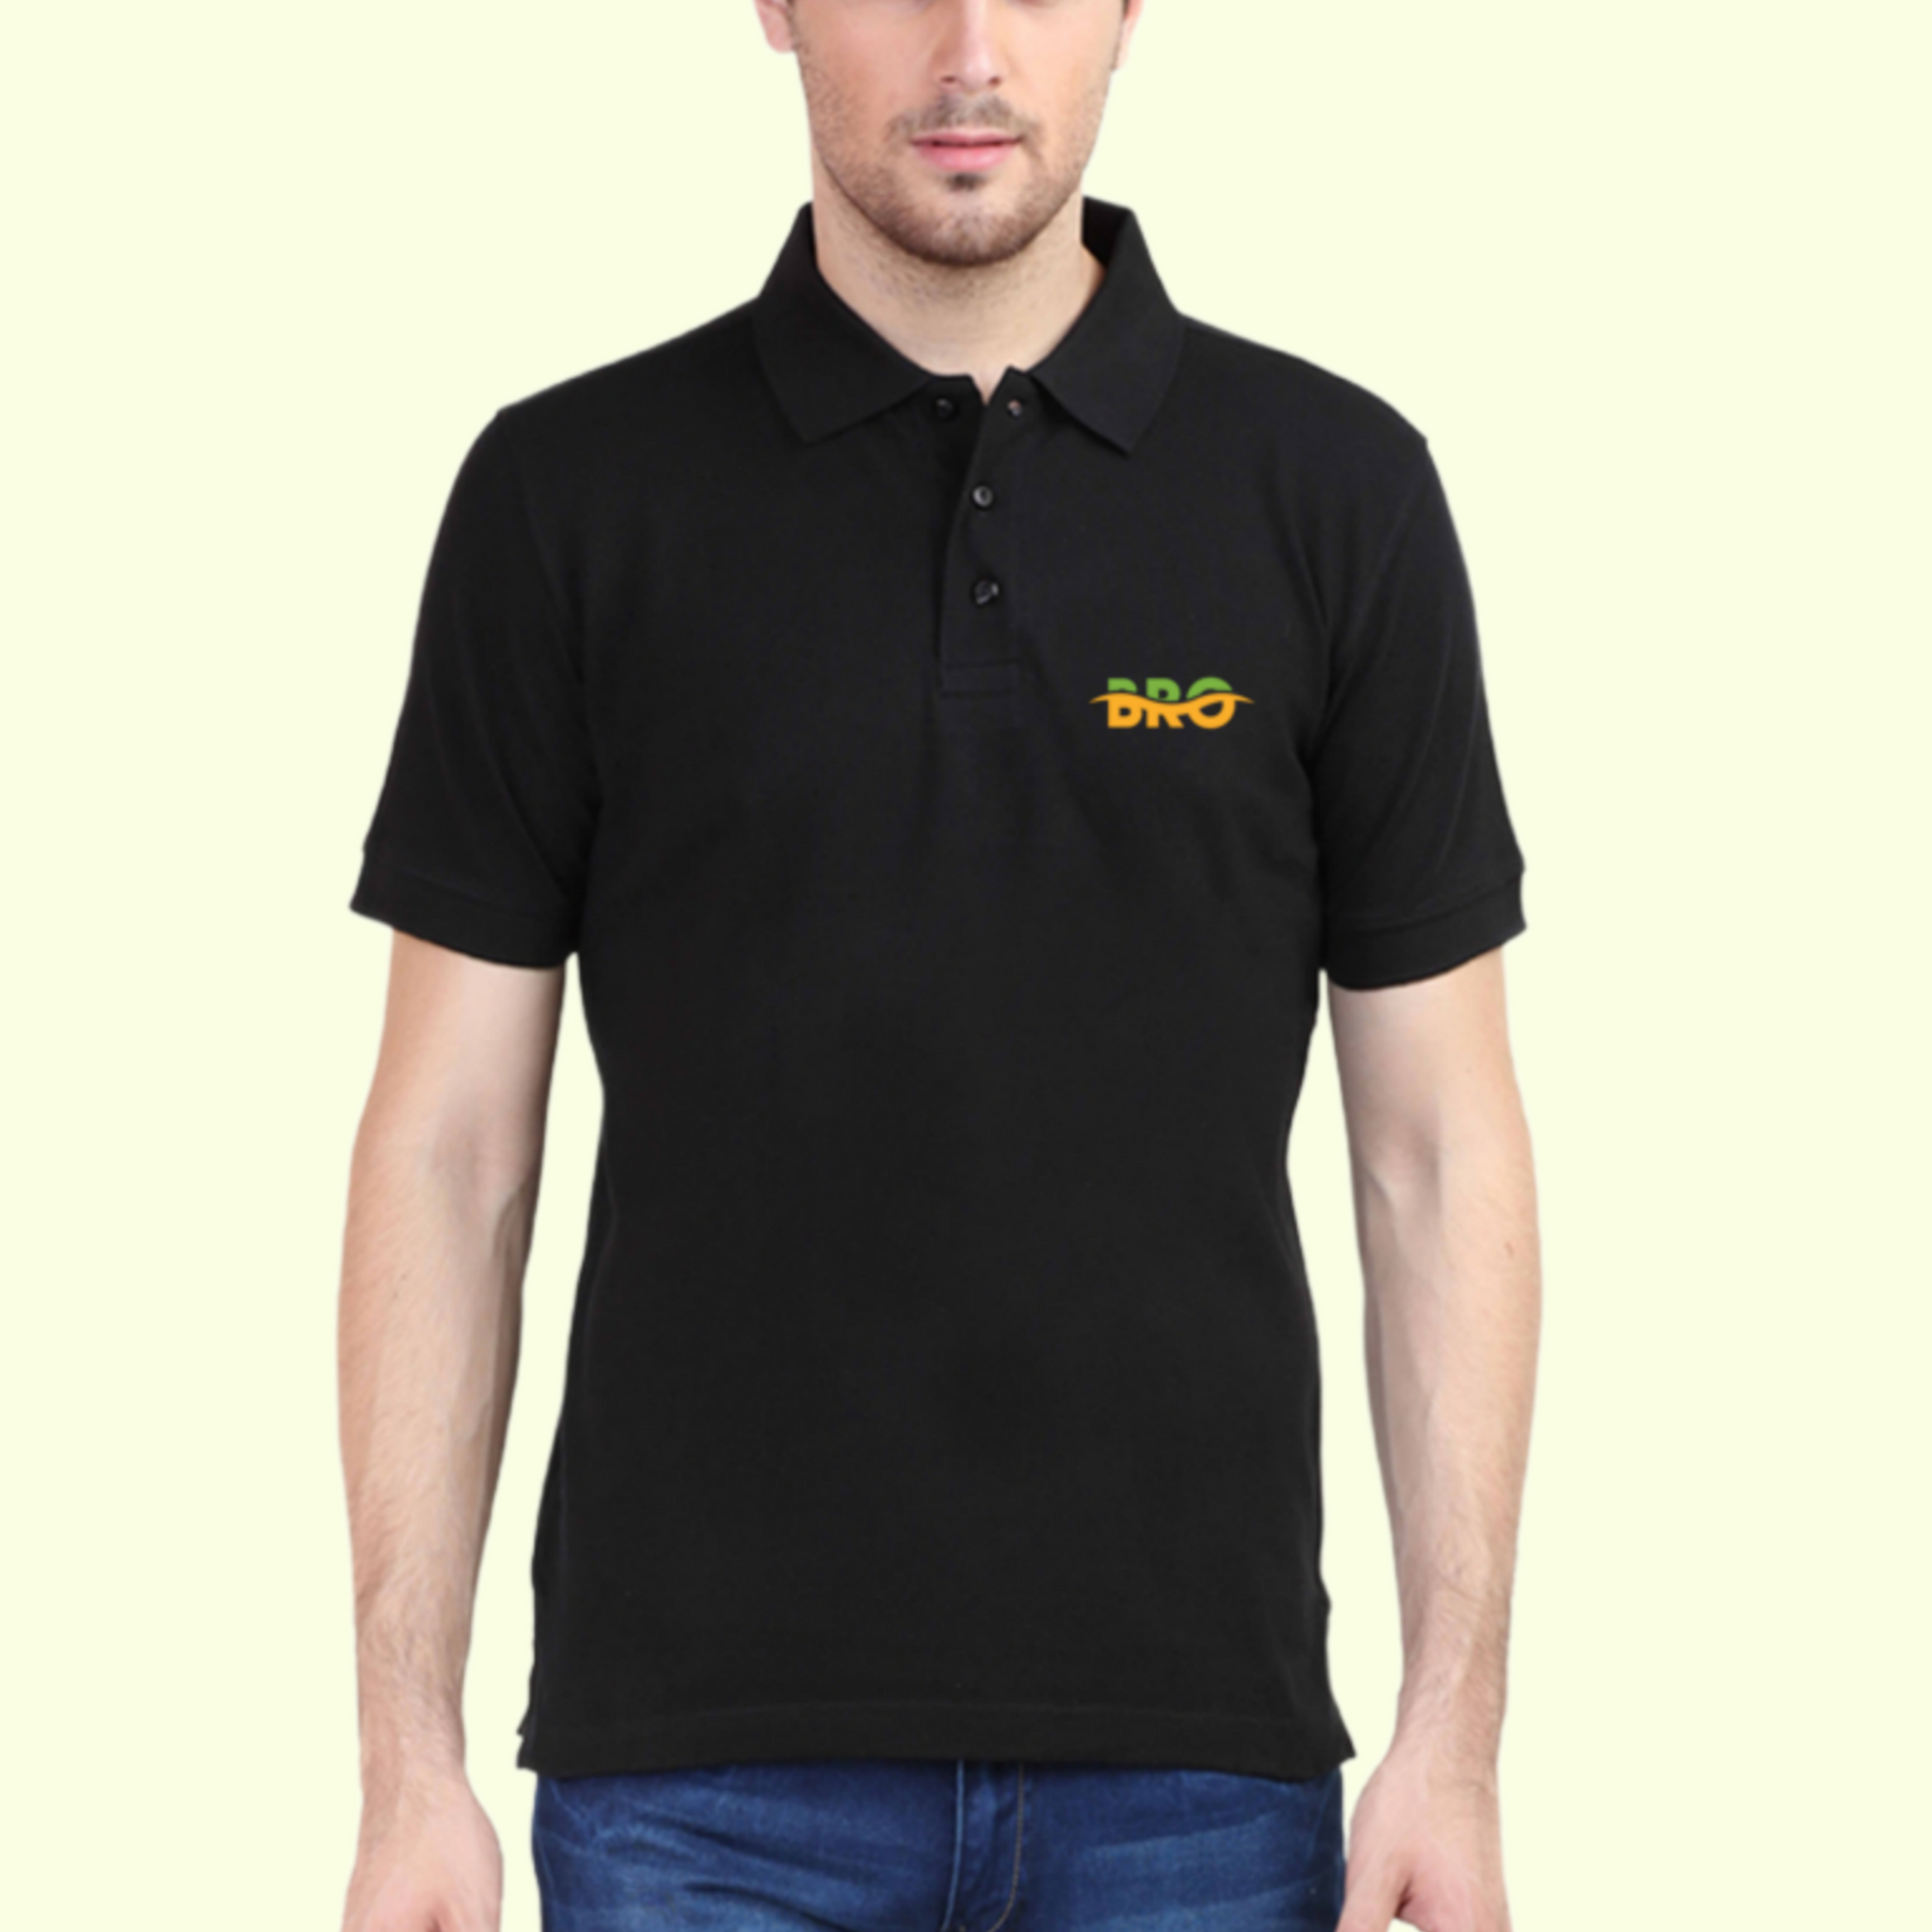 Polo T-shirt Black with Bro Graphics